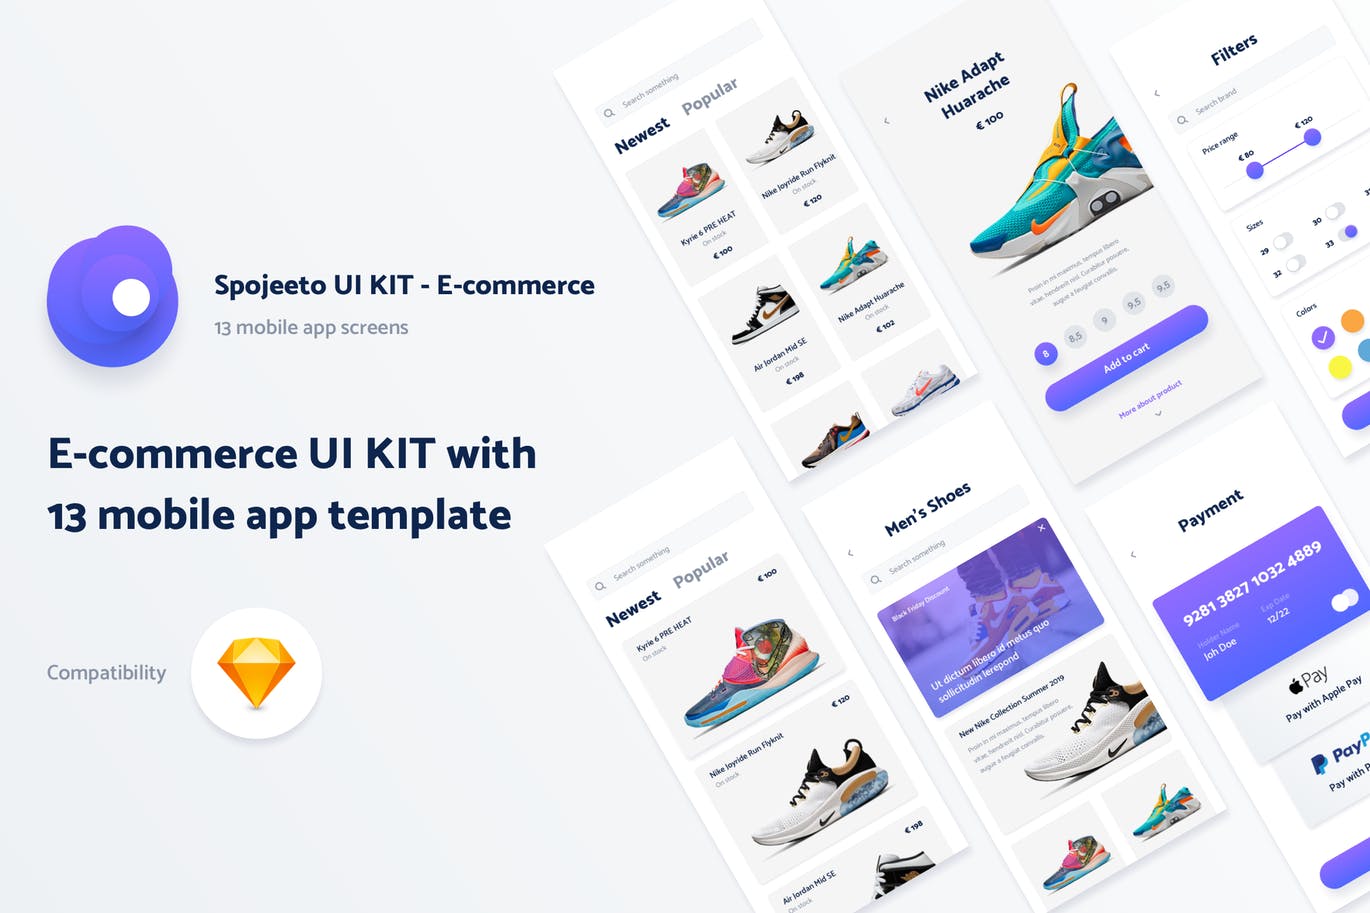 运动装备网上商城APP应用UI设计第一素材精选套件 Spojeeto E-commerce Mobile App UI Kit插图